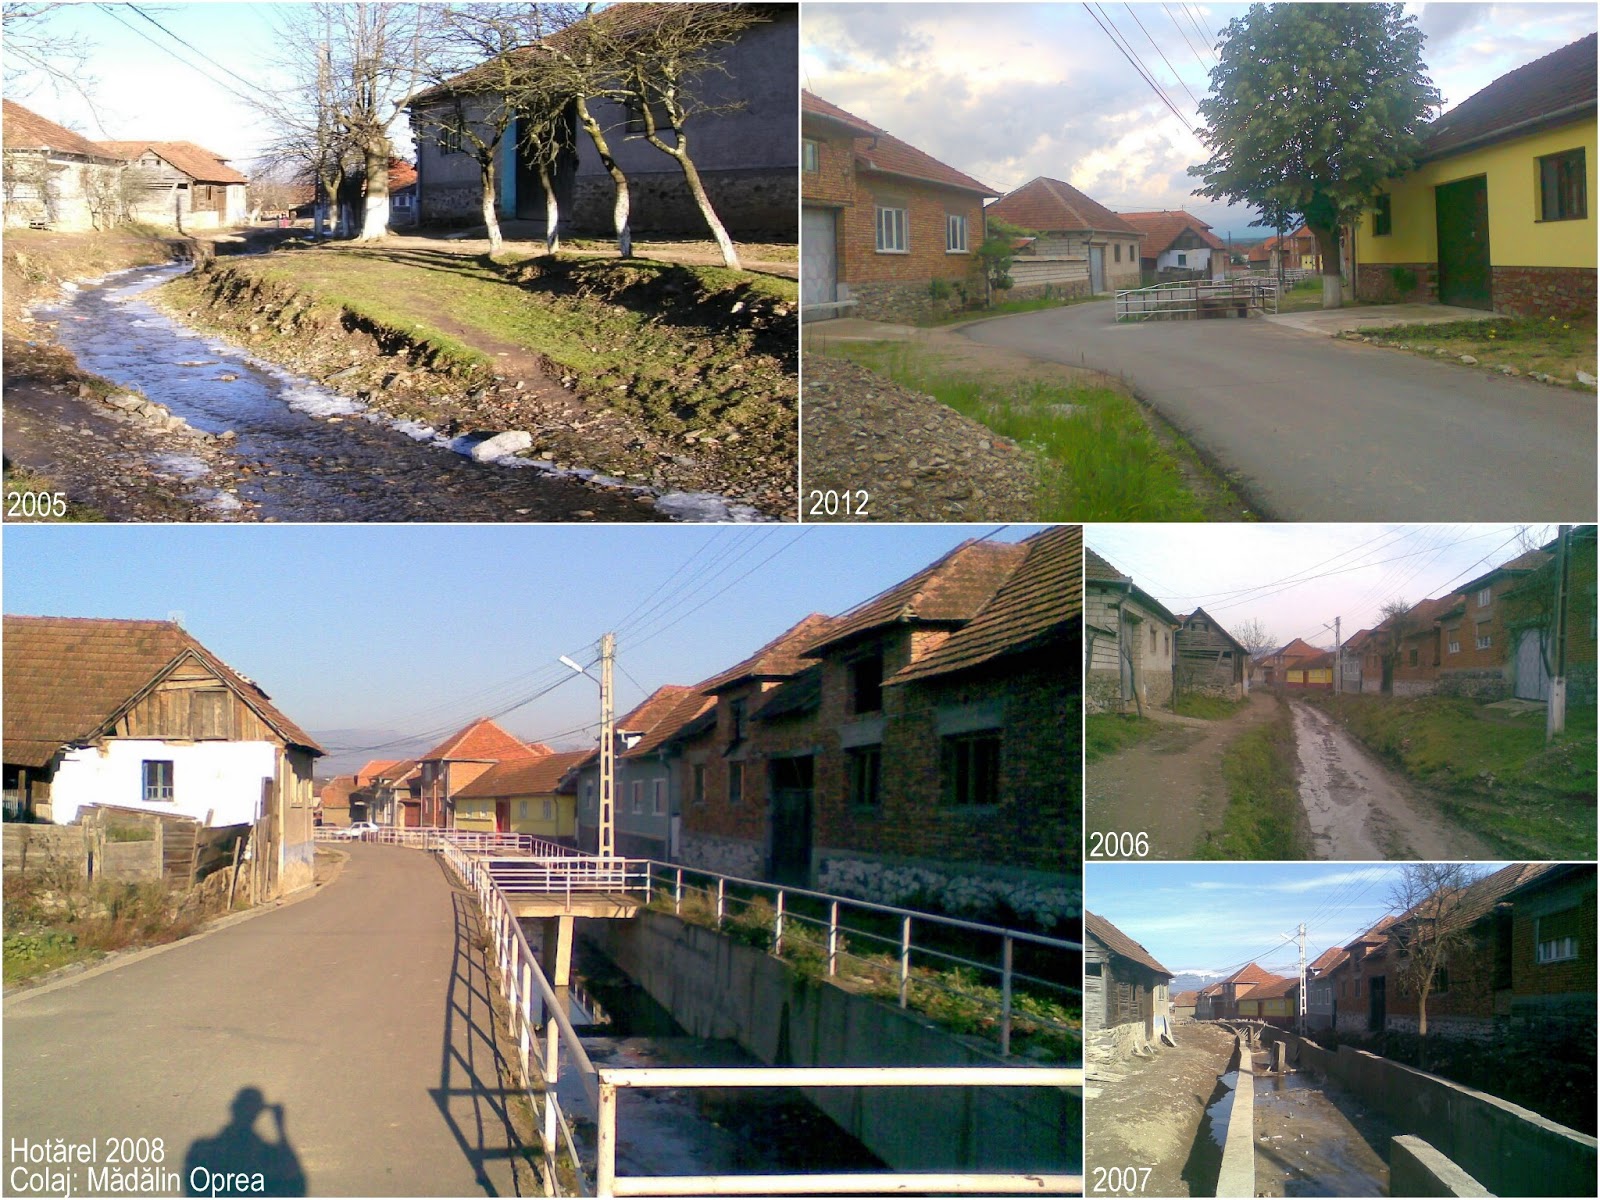 Hotarel, Bihor, Romania colaj 2005 vs 2006 vs 2007 vs 2008 vs 2012 ; satul Hotarel comuna Lunca judetul Bihor Romania